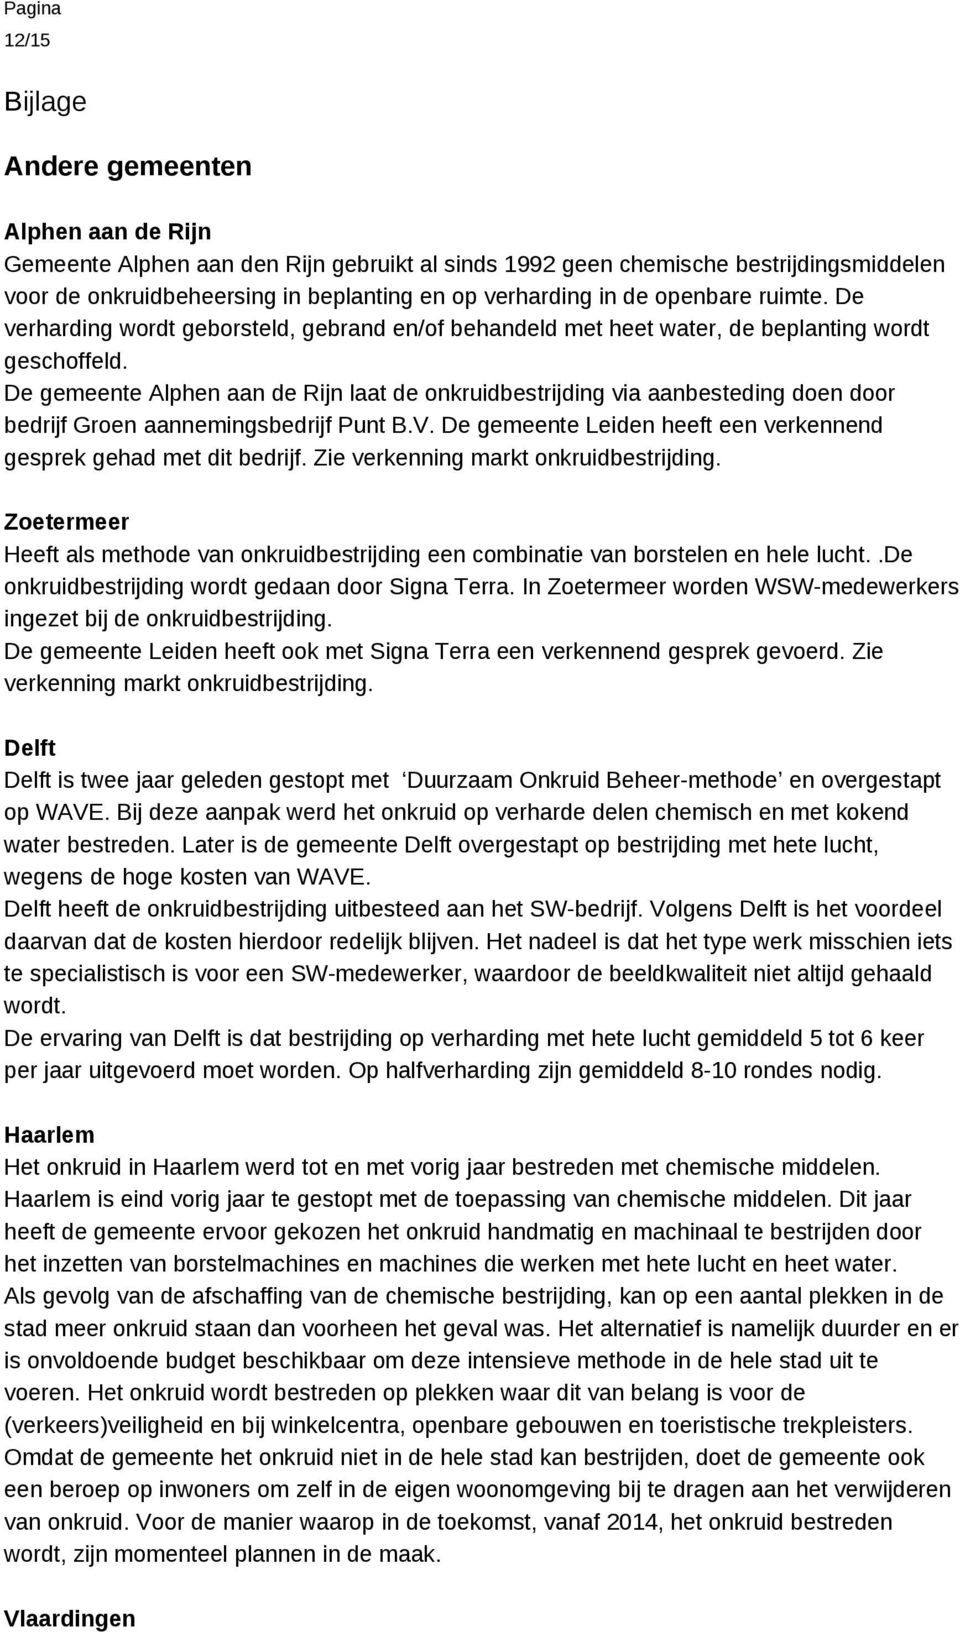 De gemeente Alphen aan de Rijn laat de onkruidbestrijding via aanbesteding doen door bedrijf Groen aannemingsbedrijf Punt B.V. De gemeente Leiden heeft een verkennend gesprek gehad met dit bedrijf.